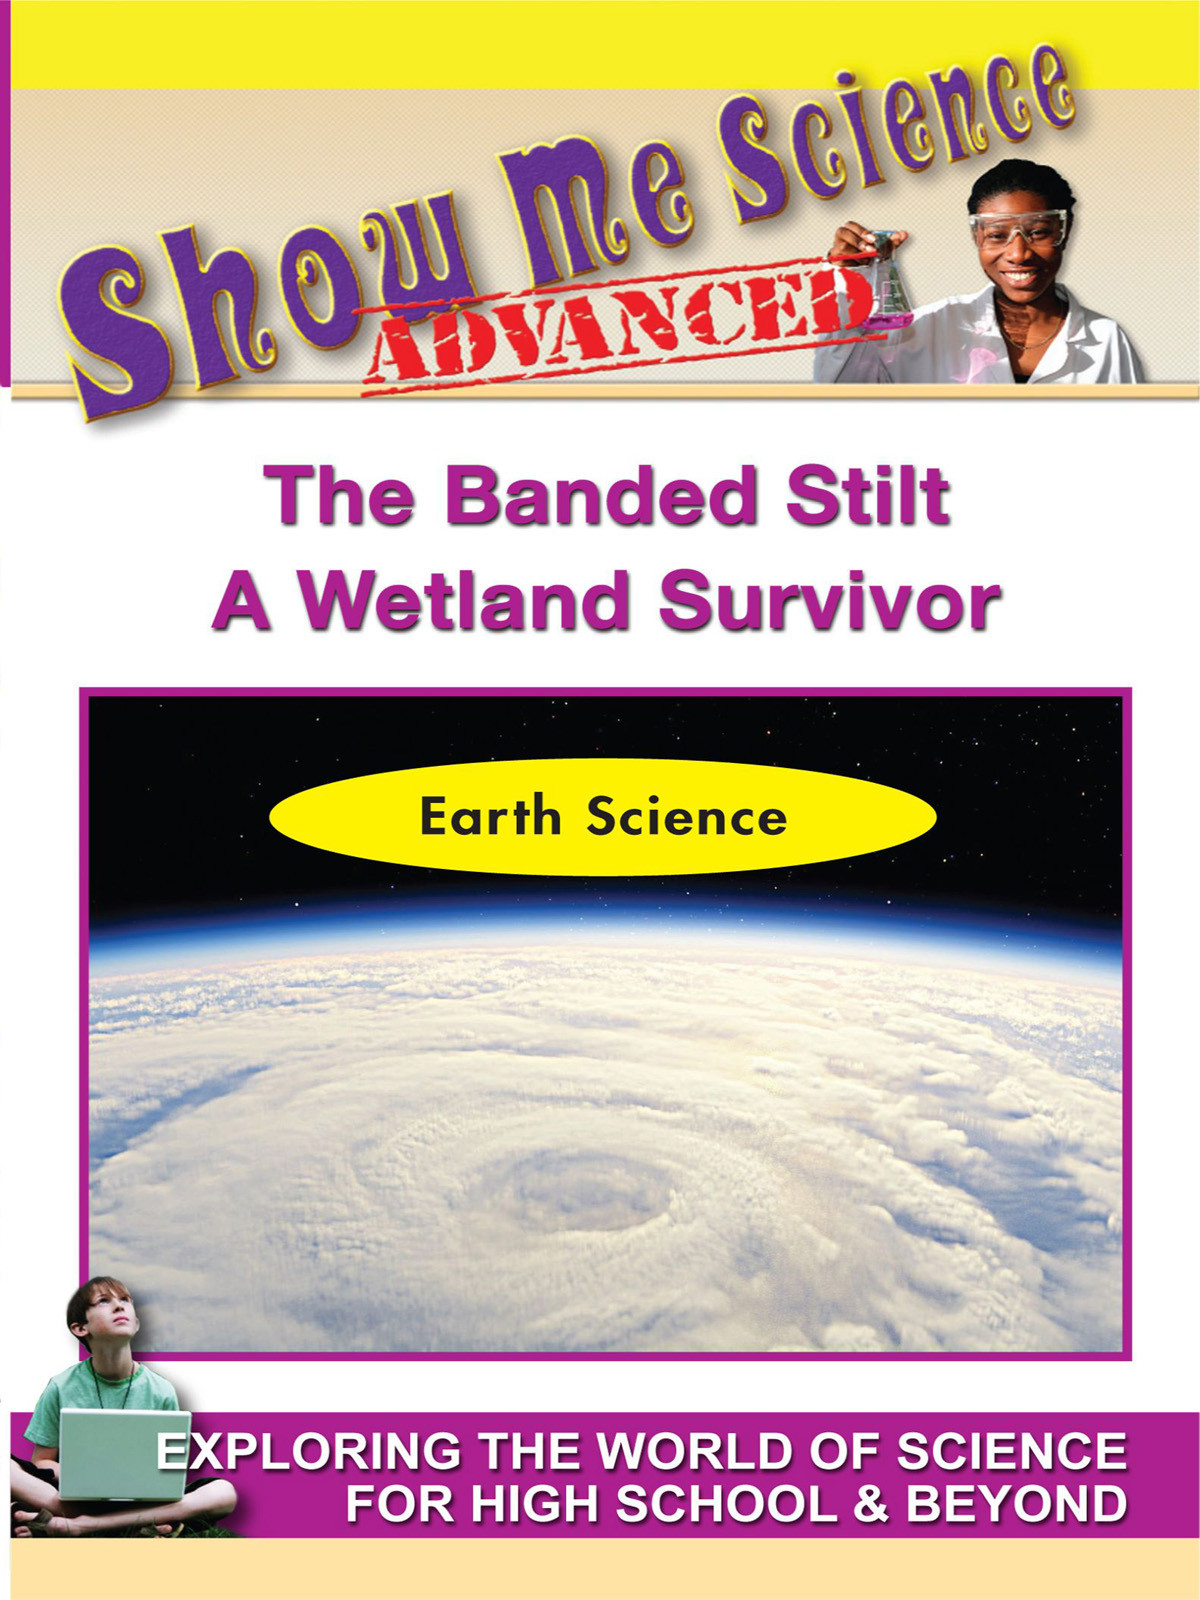 K4630 - Earth Science The Banded Stilt  A Wetland Survivor